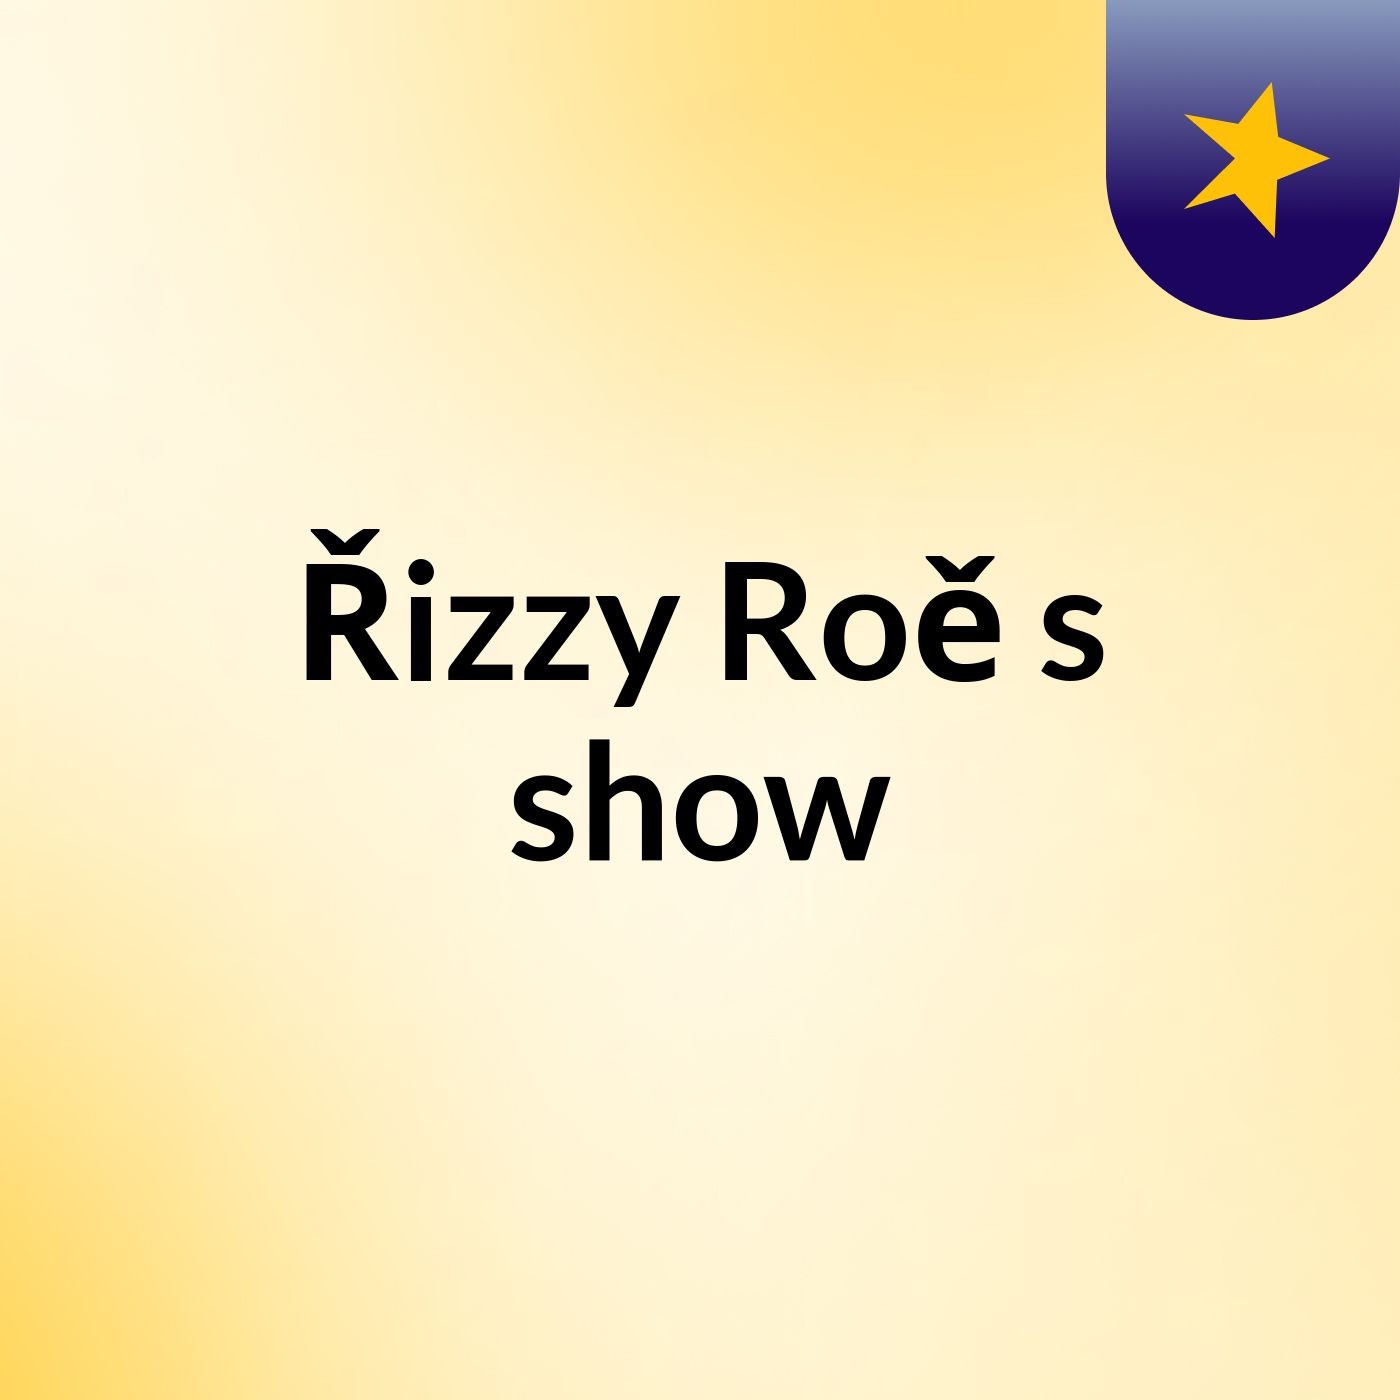 Řizzy Roě's show